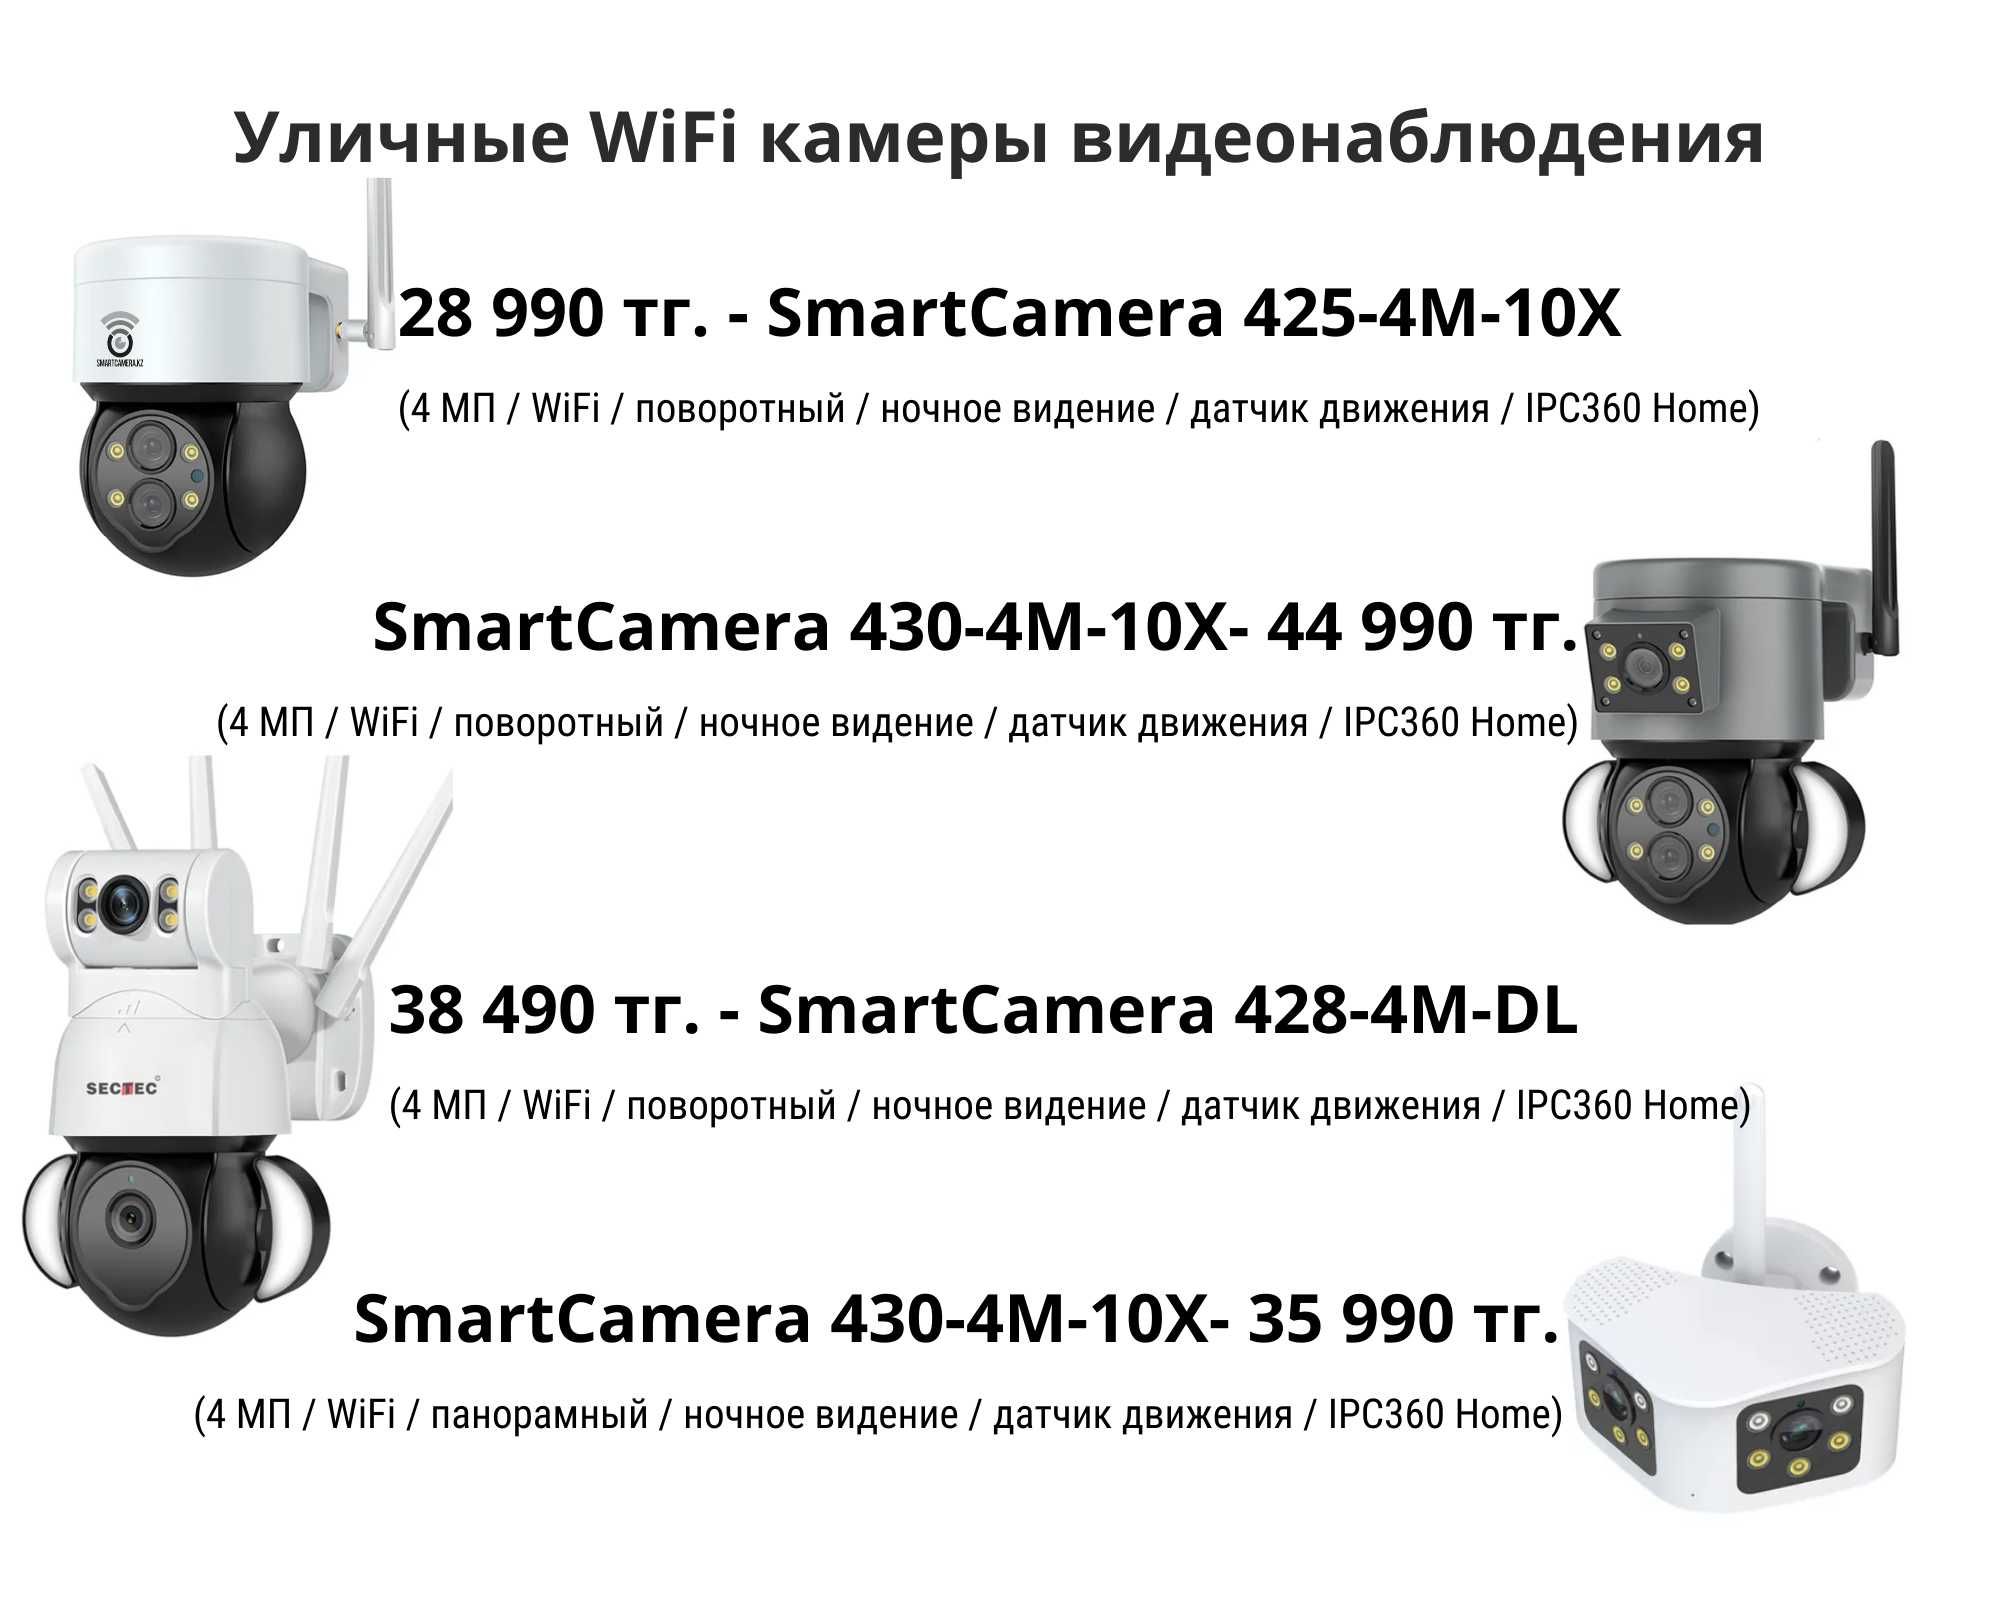 Беспроводные камеры видеонаблюдения для безопасности дома и бизнеса